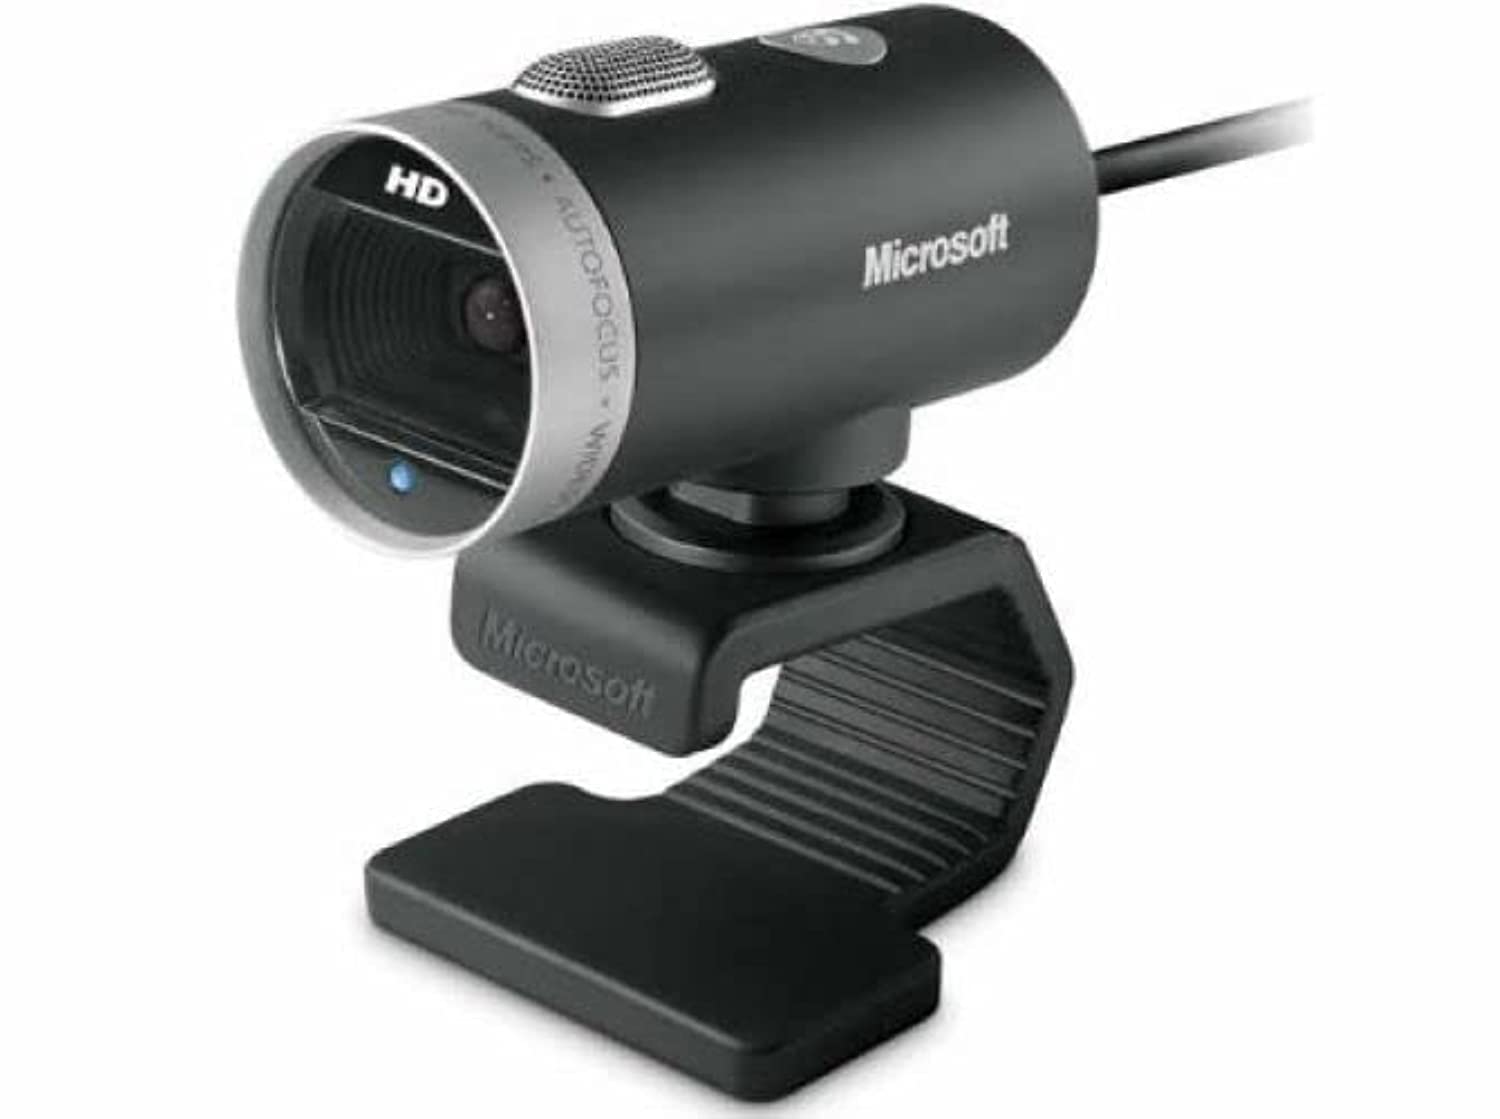 Microsoft LifeCam Cinema Webcam for Business - Black wi...